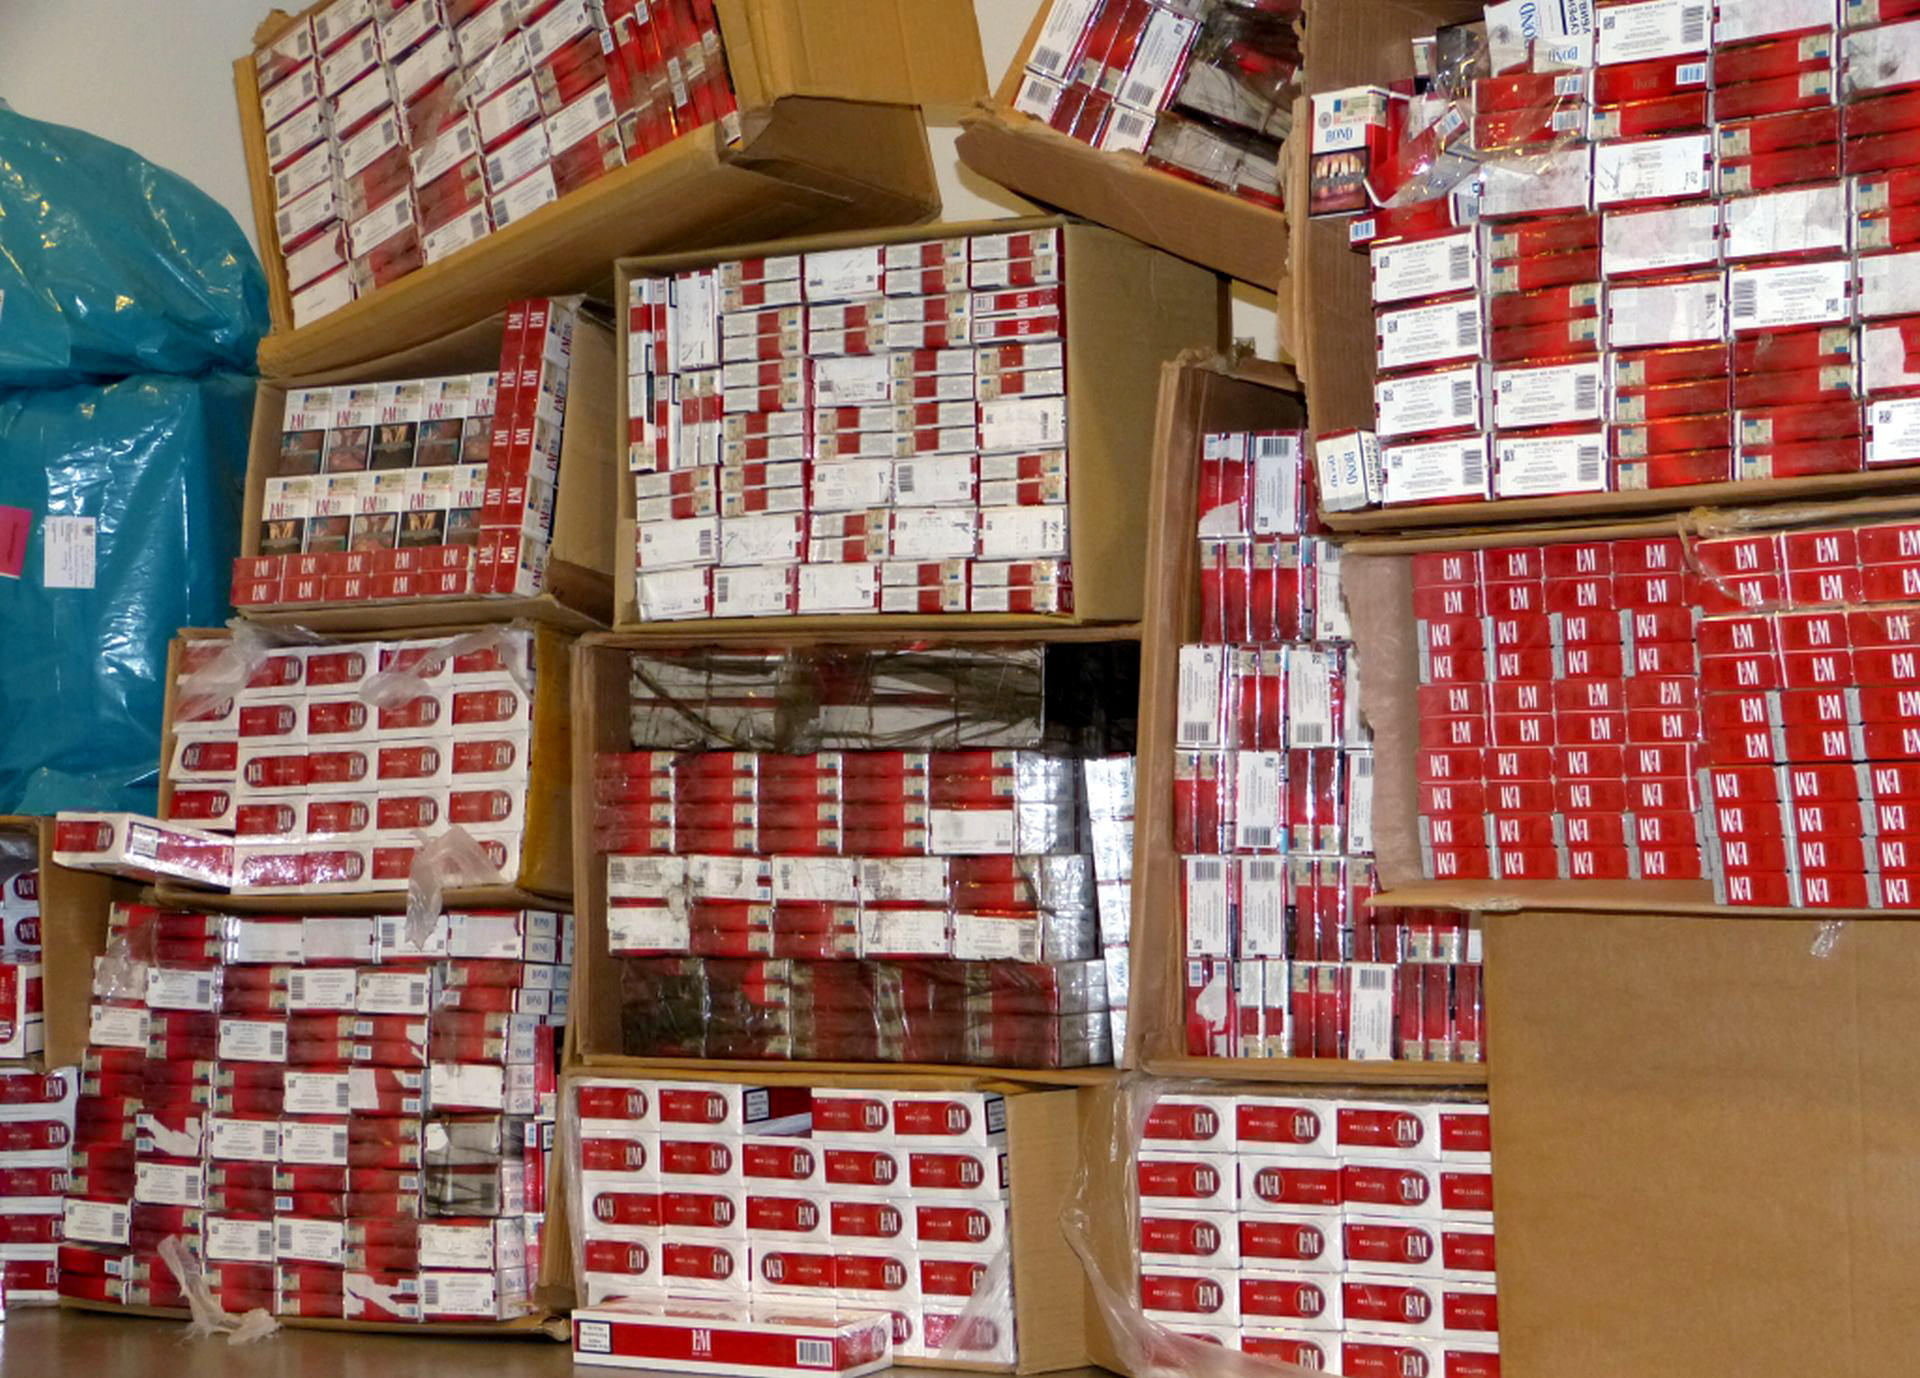 Einbruch in REWE markt in Harsefeld – Täter erbeuten hunderte Stangen Zigaretten